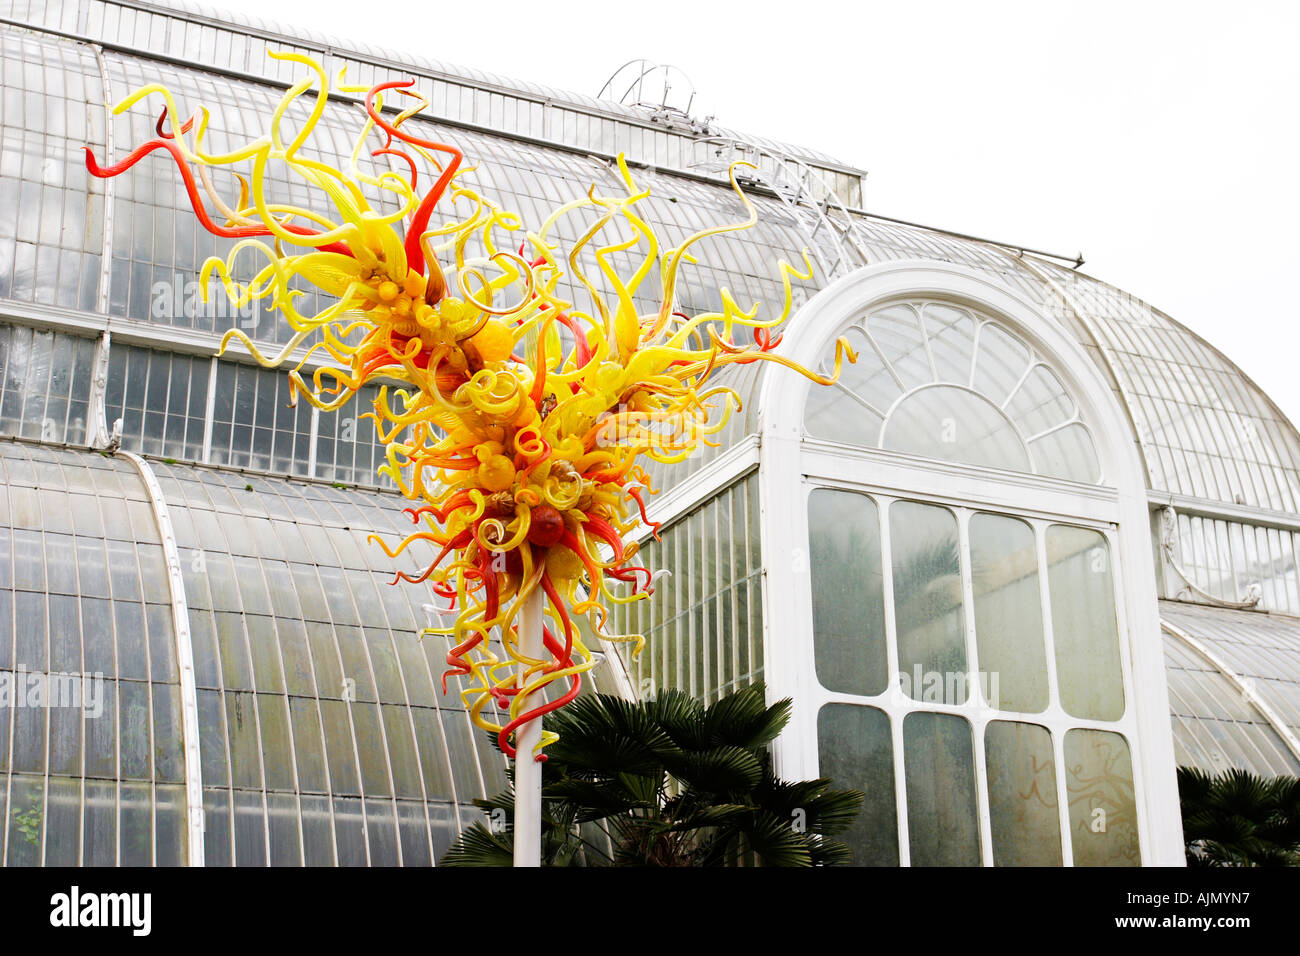 Sculpture en verre soufflé Chihuly expose à Kew Gardens, Londres Banque D'Images